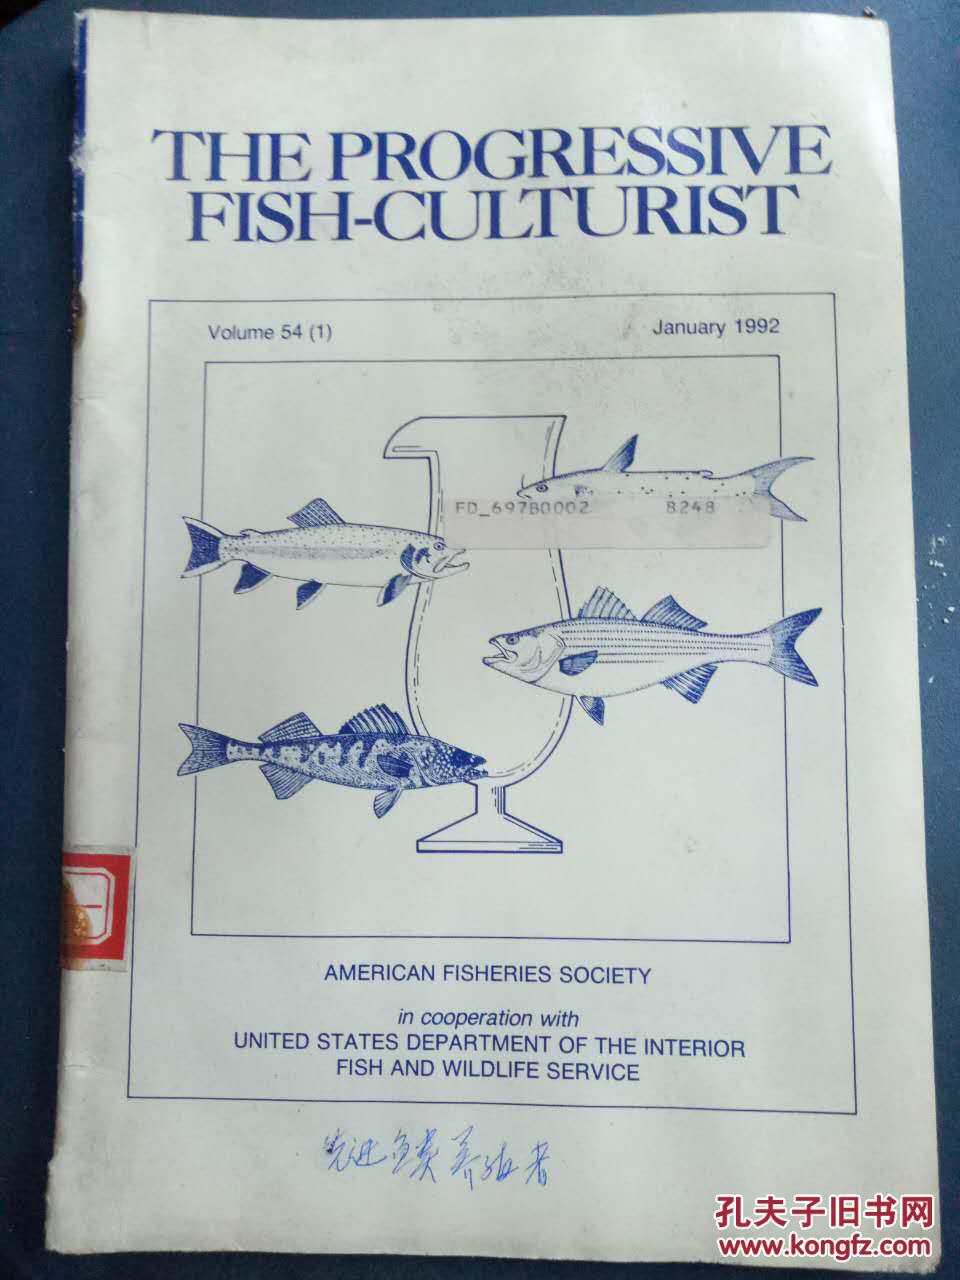 【THE PROGRESSIVE FISH-CULTUBIST Volume 54（1）1992】